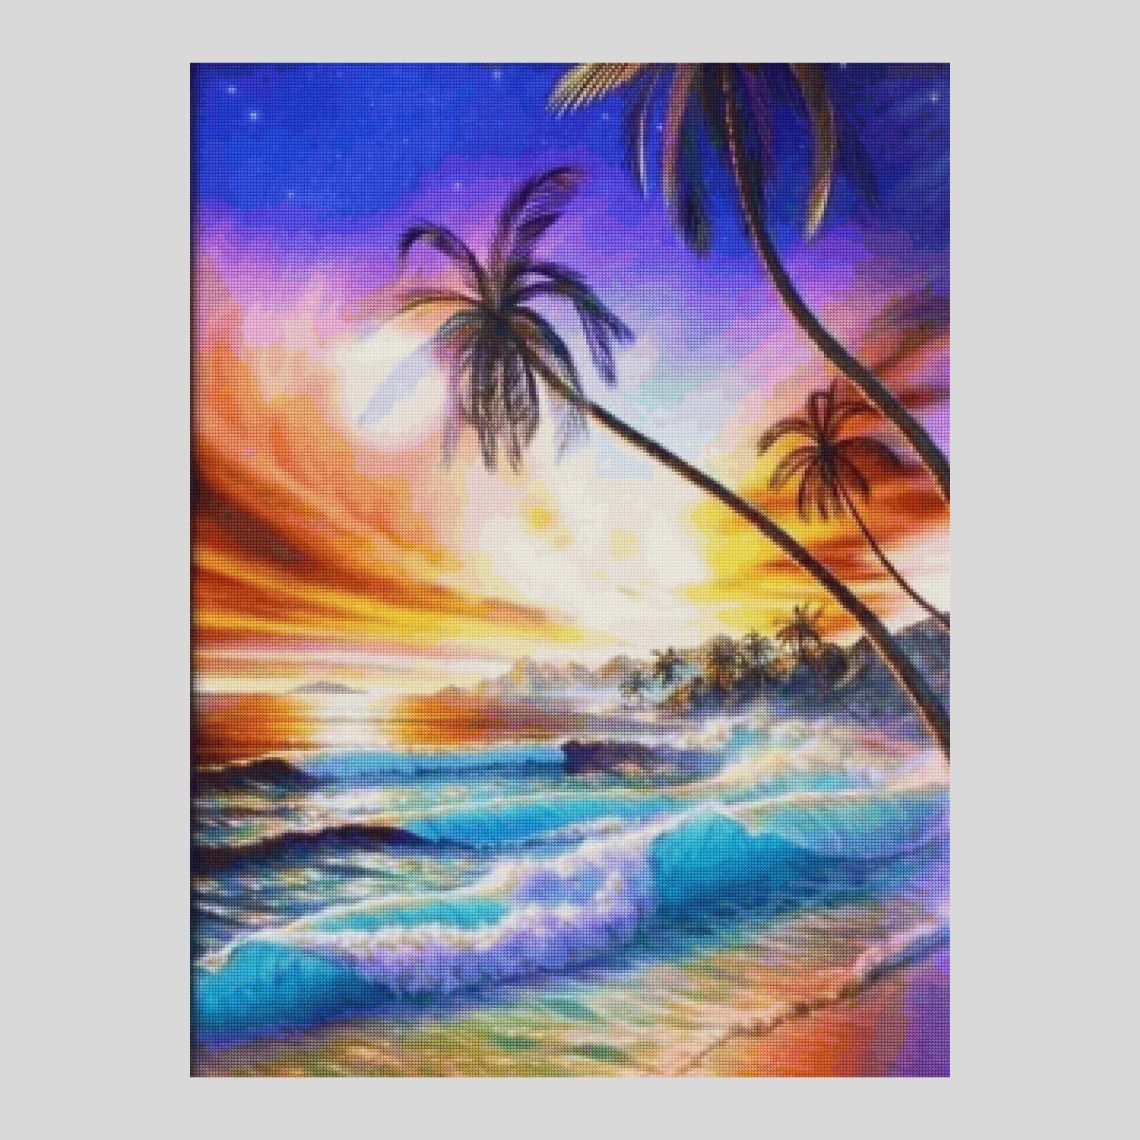 Beach Fall Sunset - Diamond Paintings 